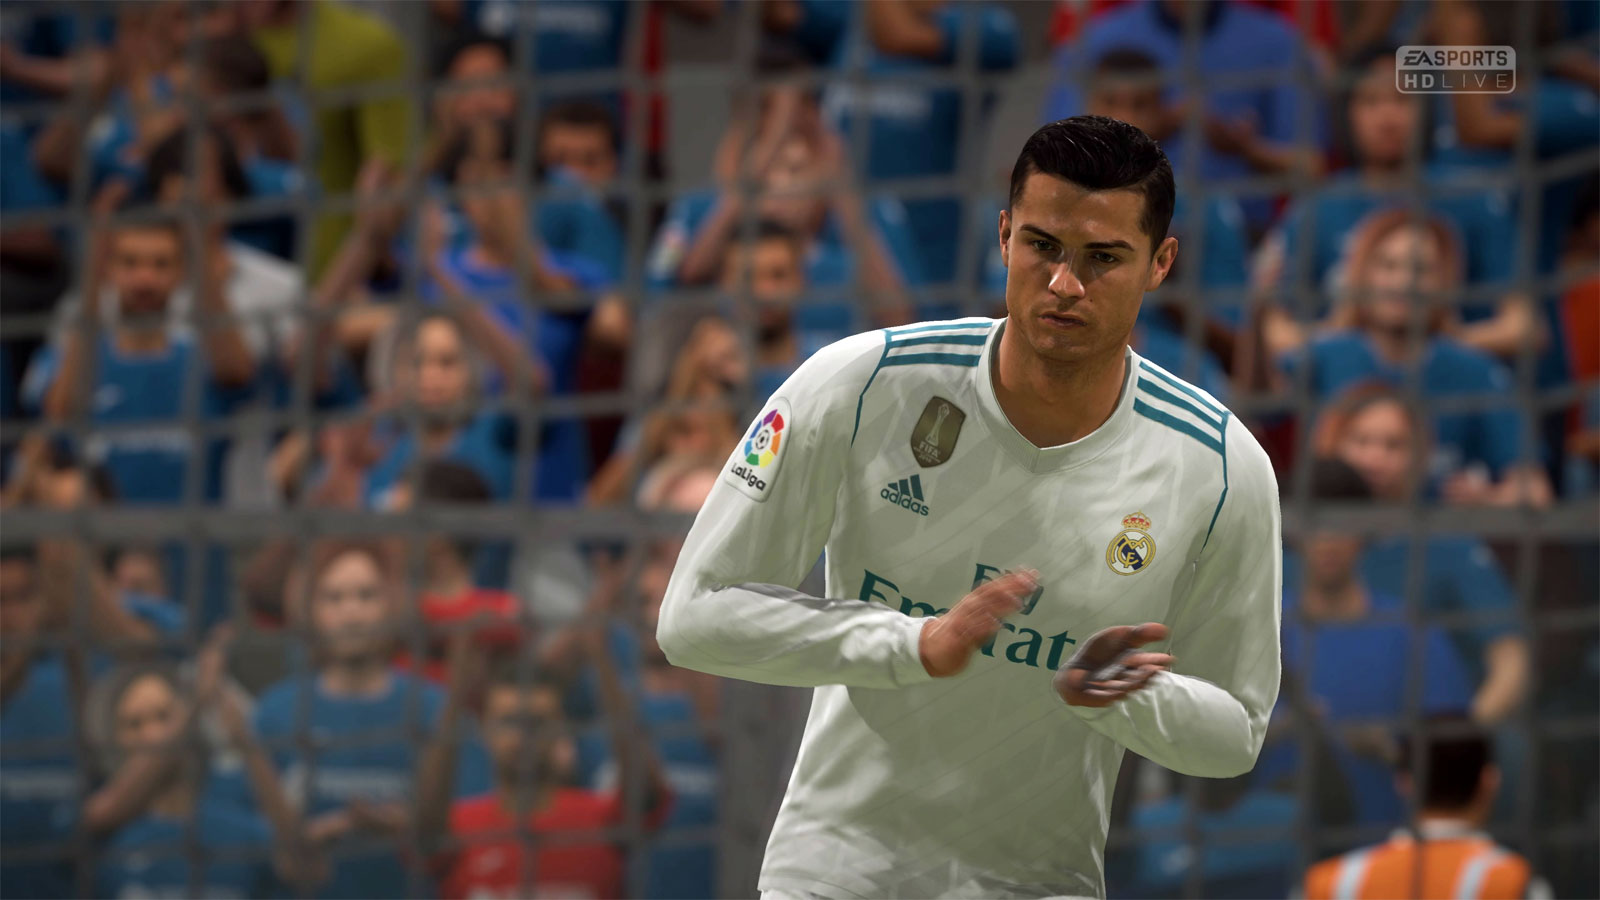 Te zmiany mają uprzyjemnić zabawę w FIFA 18. EA Sports podaje listę